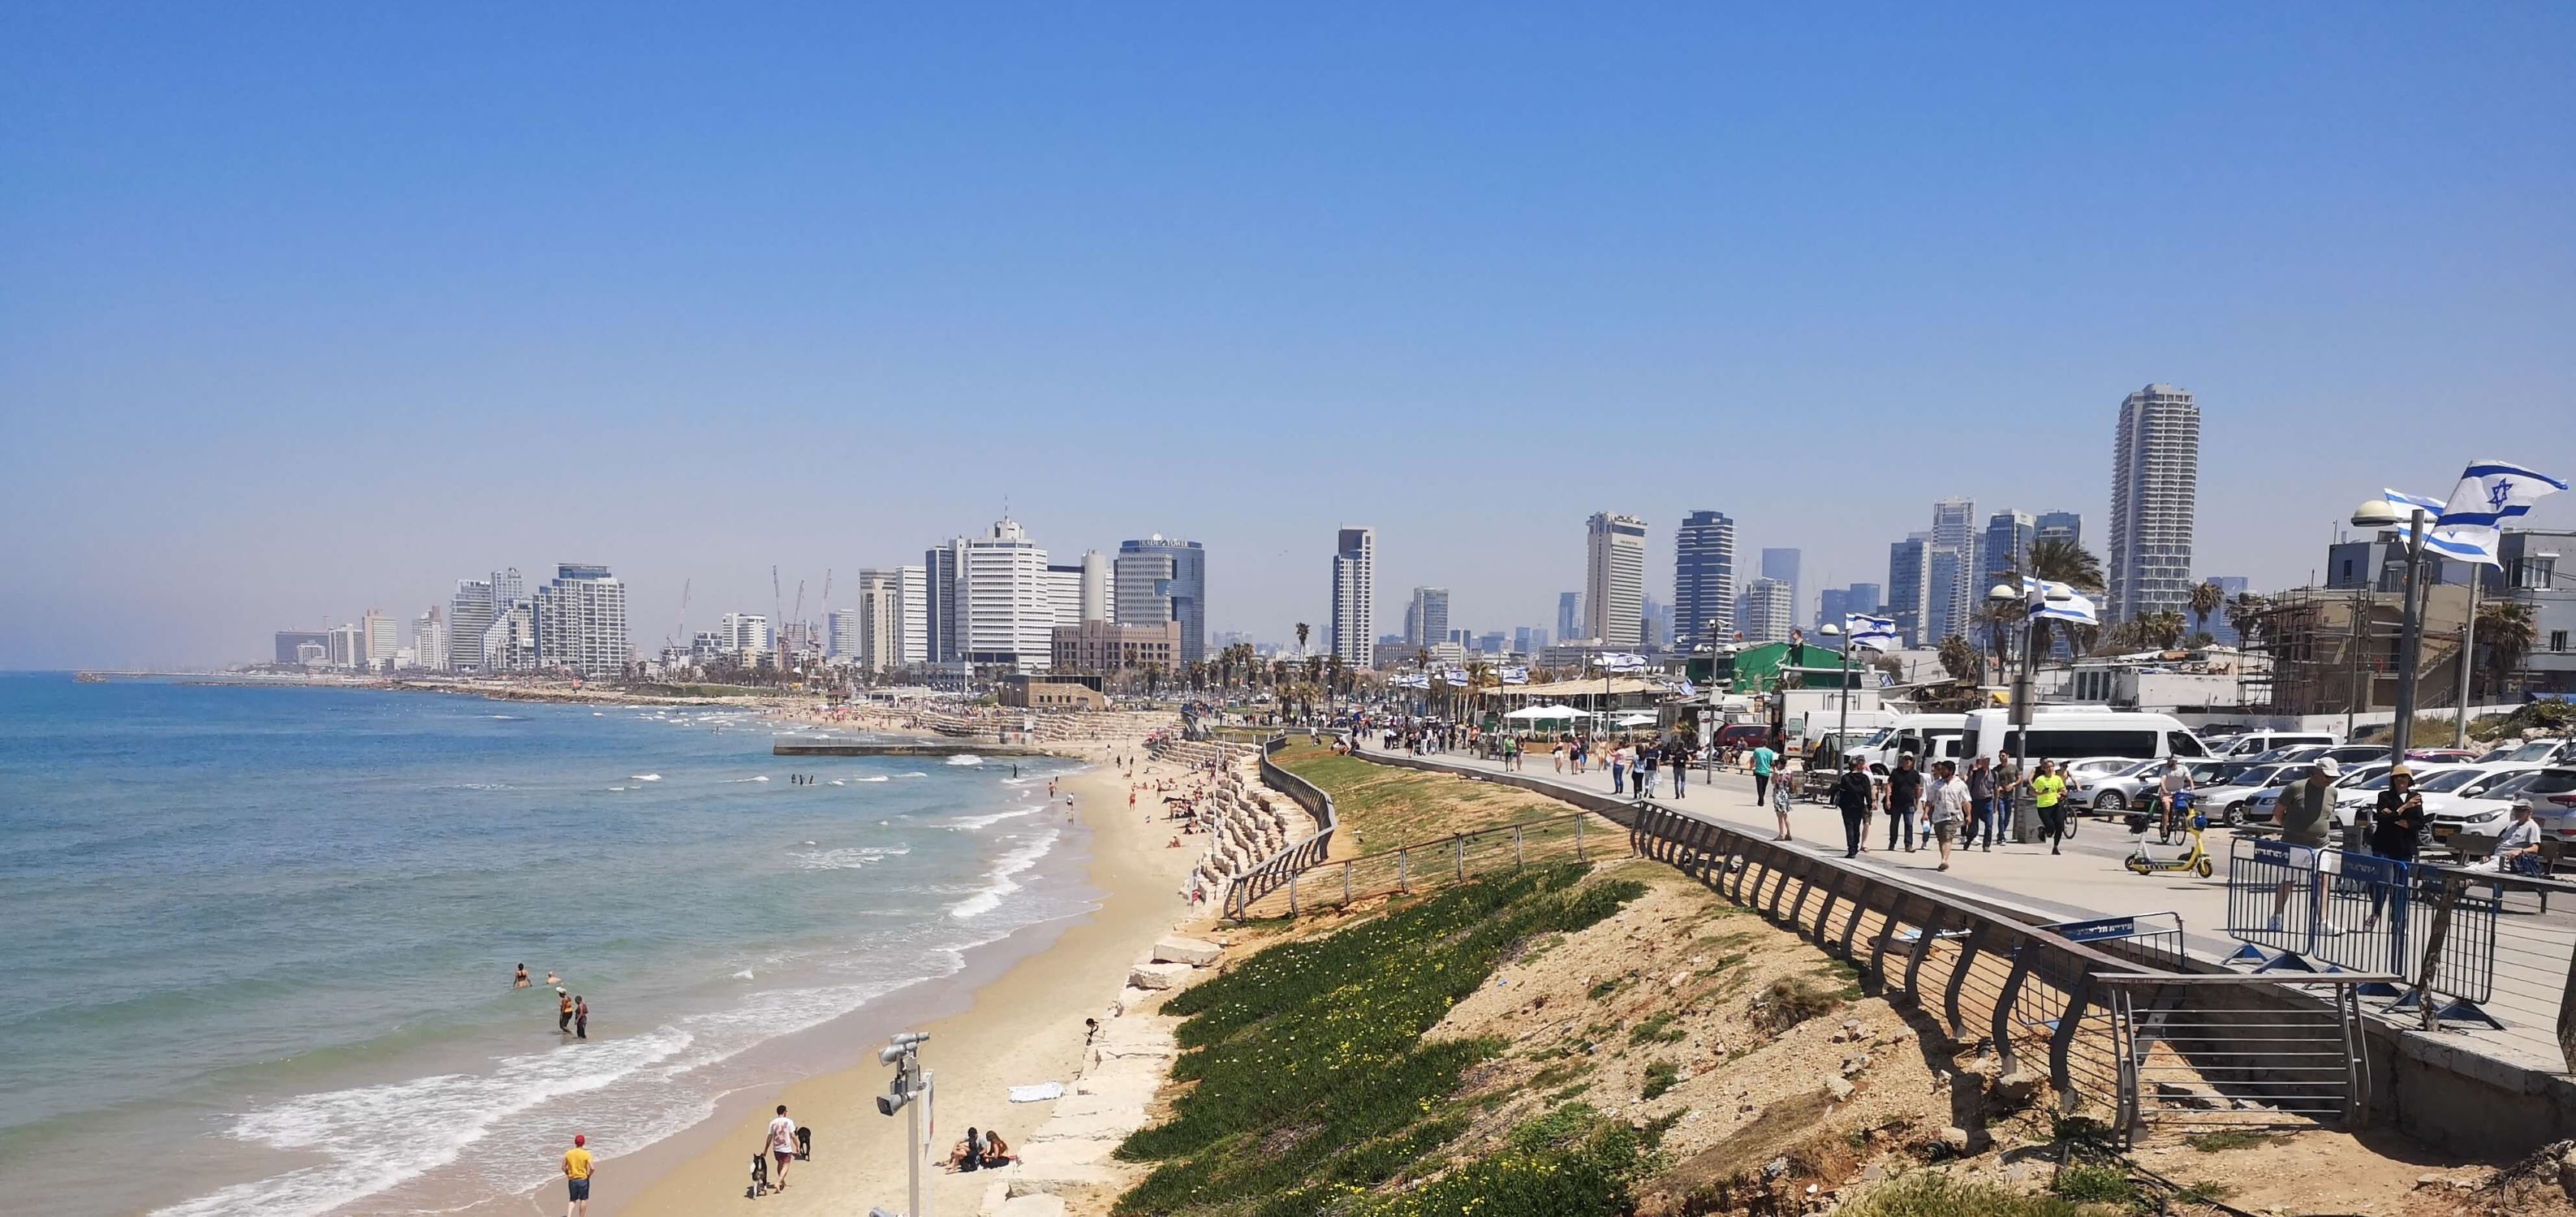 Tel_Aviv_k_pia8n91l.jpg